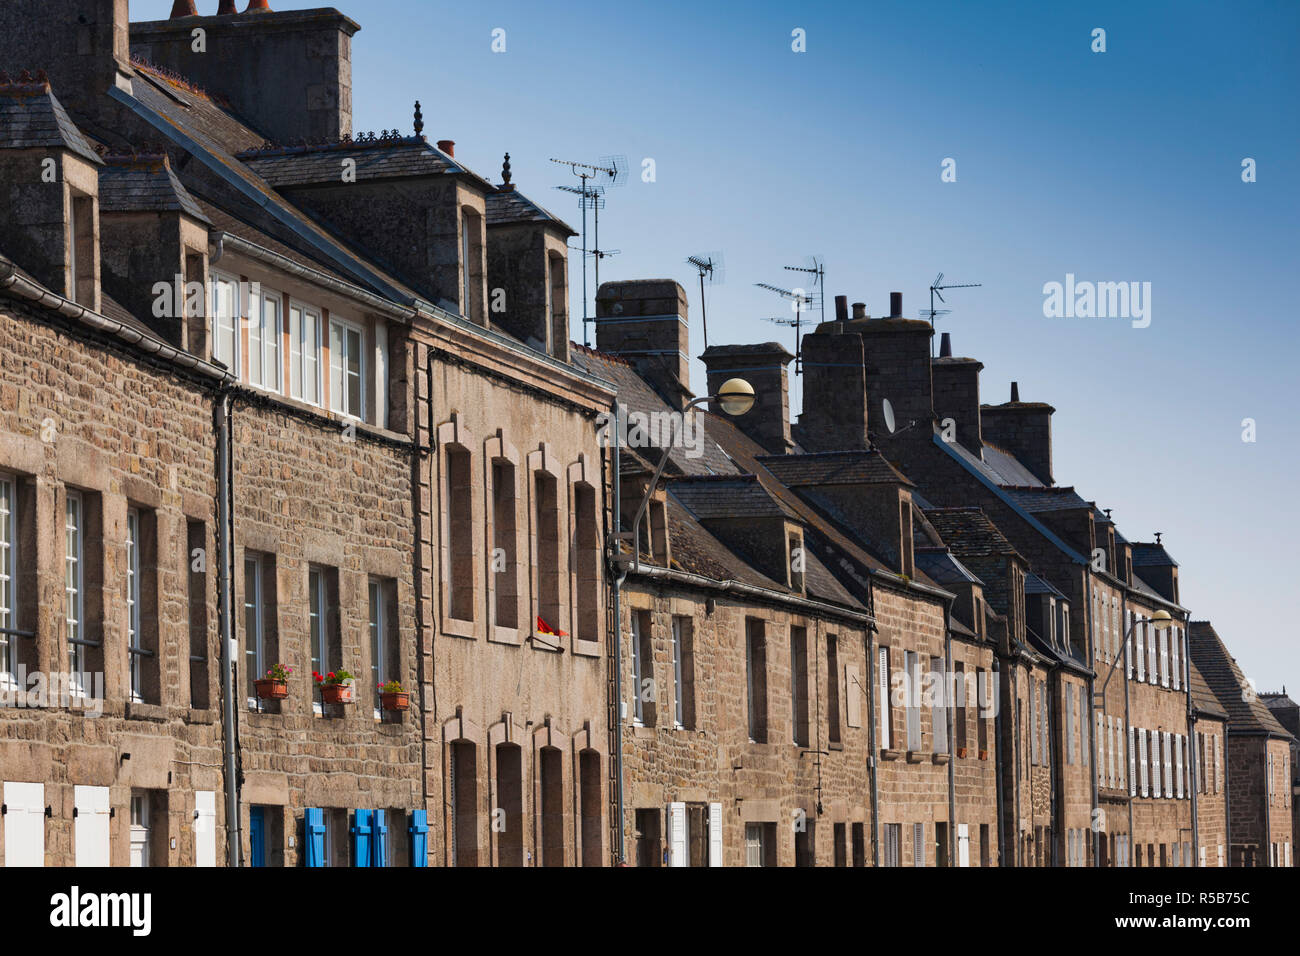 France, Normandy Region, Manche Department, Barfleur, town buildings Stock Photo